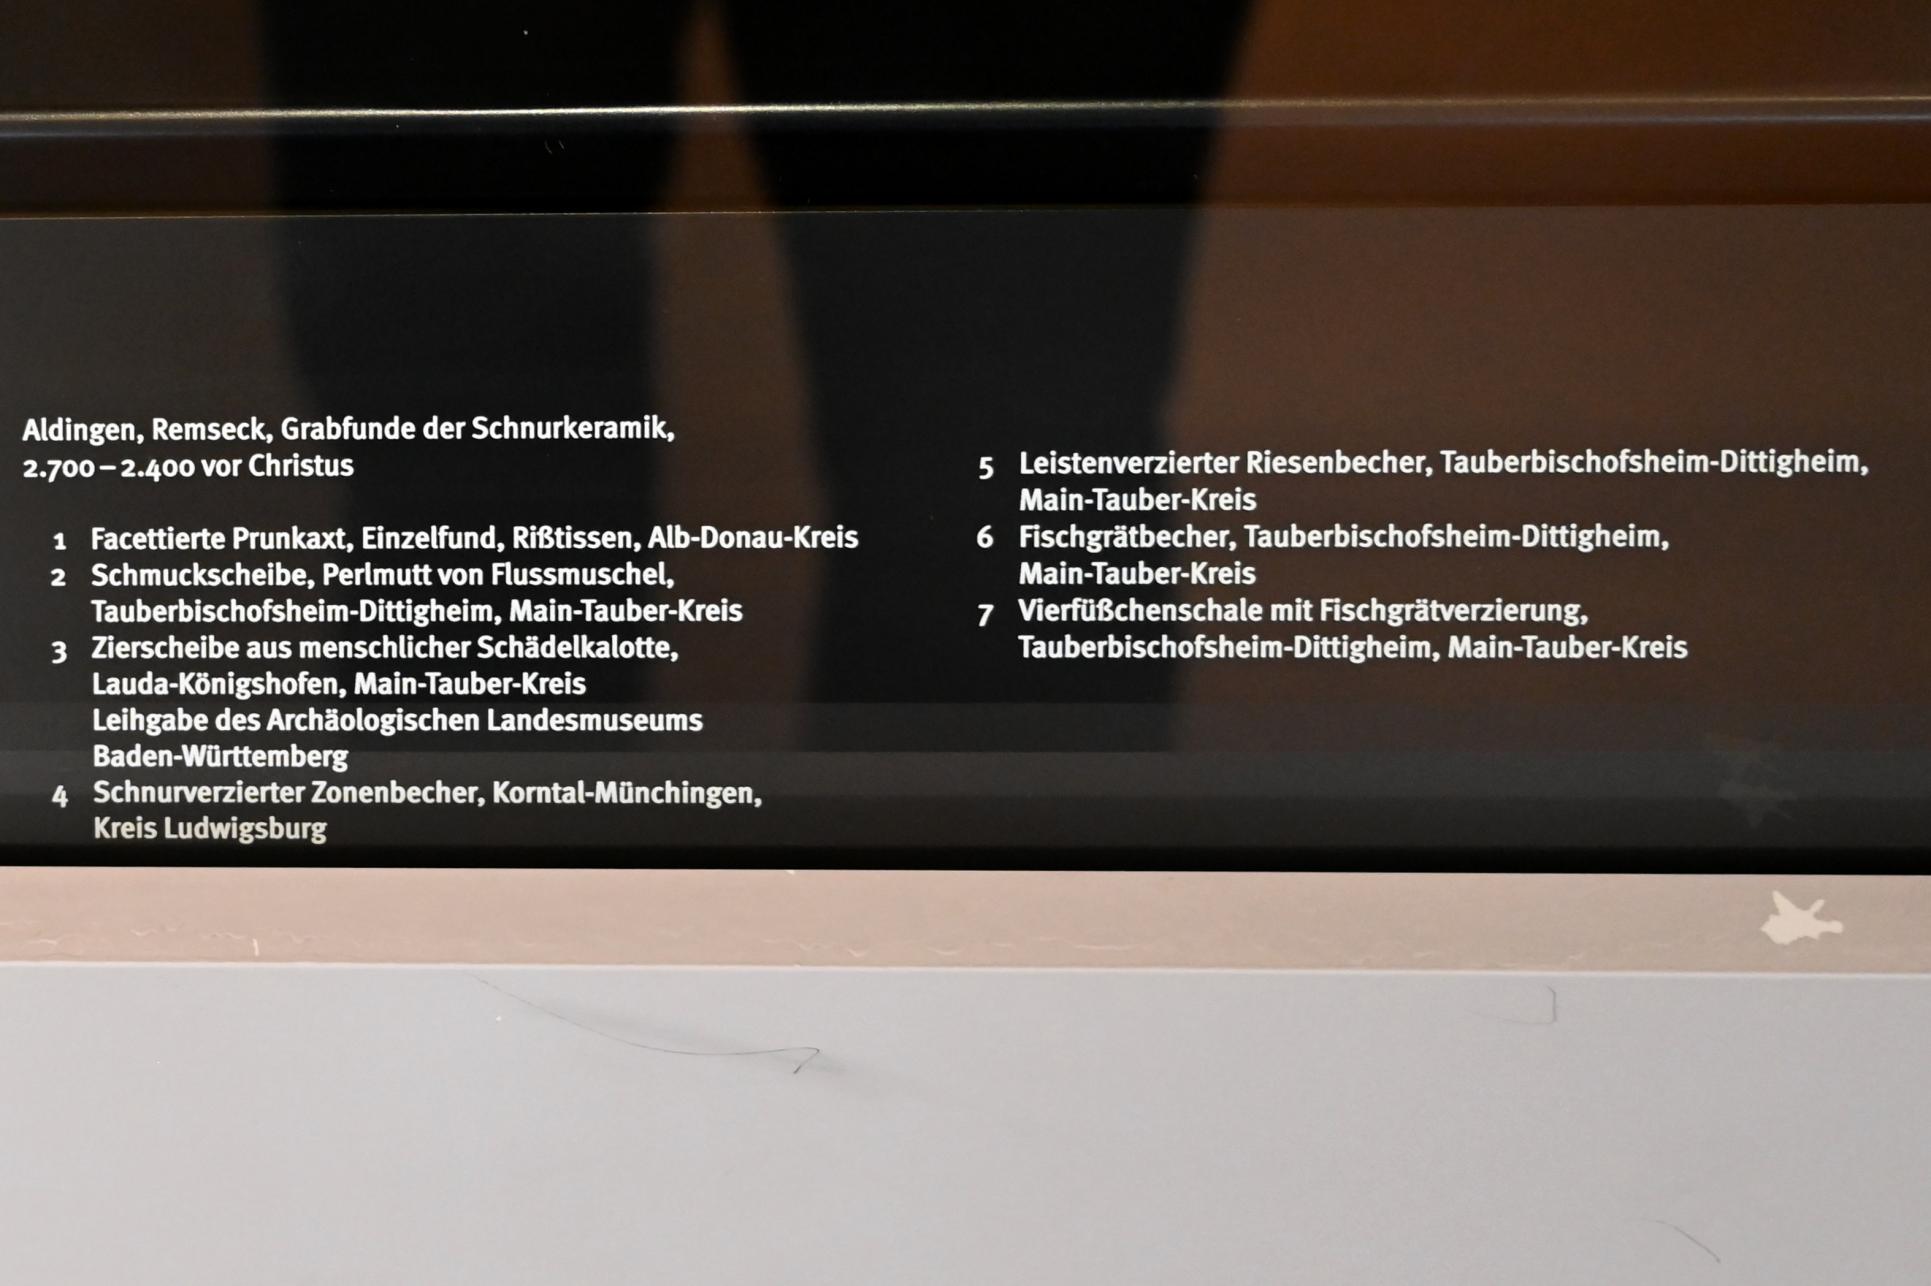 Schnurverzierter Zonenbecher, Neolithikum (Jungsteinzeit), 5500 - 1700 v. Chr., 2700 - 2400 v. Chr., Bild 2/3